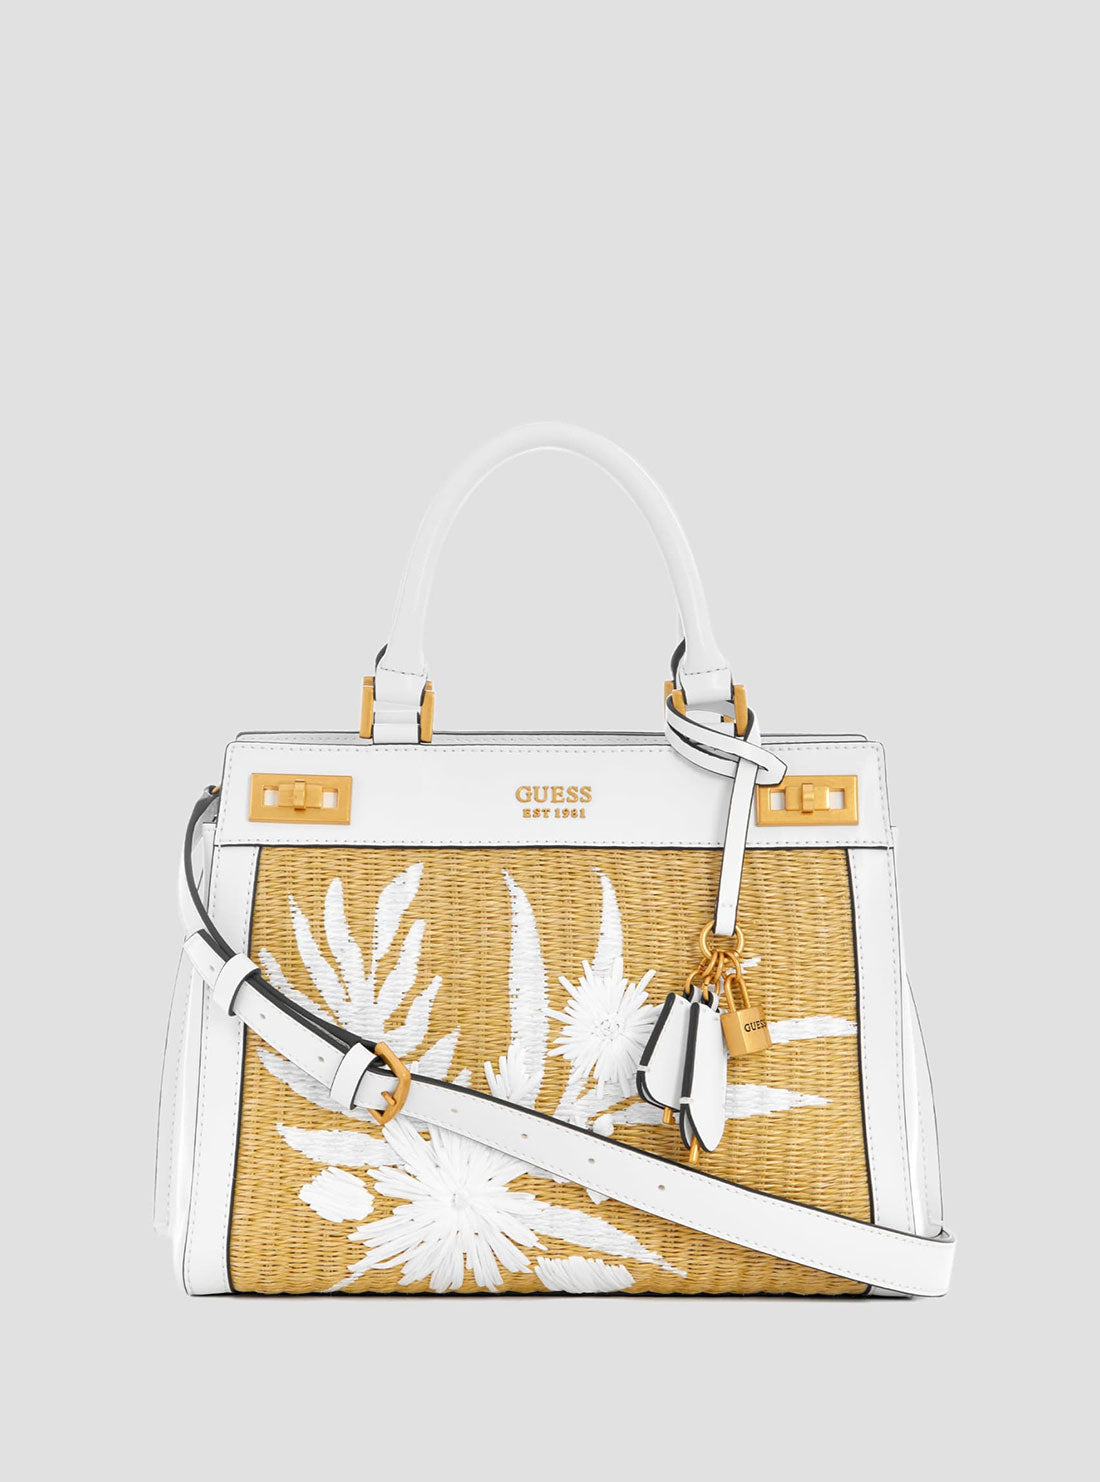 Guess Katey Luxury Satchel Purse - Women's Bags in Stone Multi